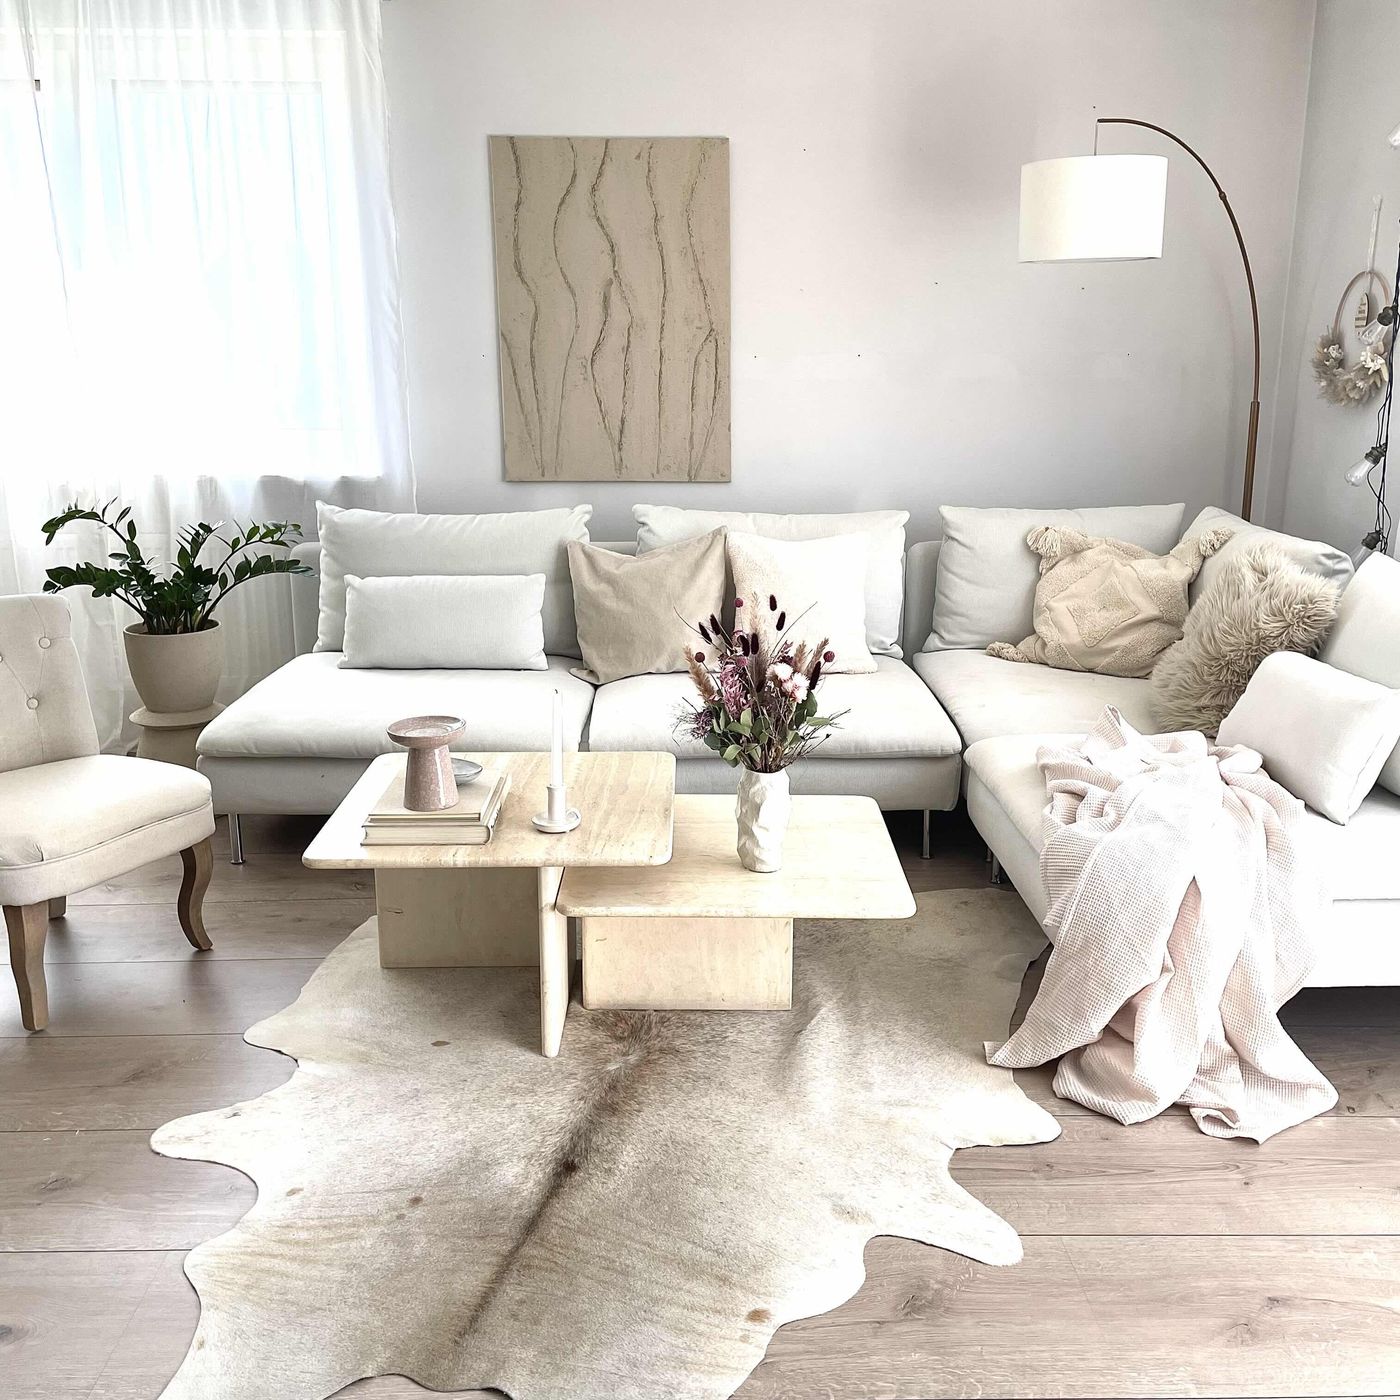 die schönsten ideen mit den ikea söderhamn sofas - seite 16